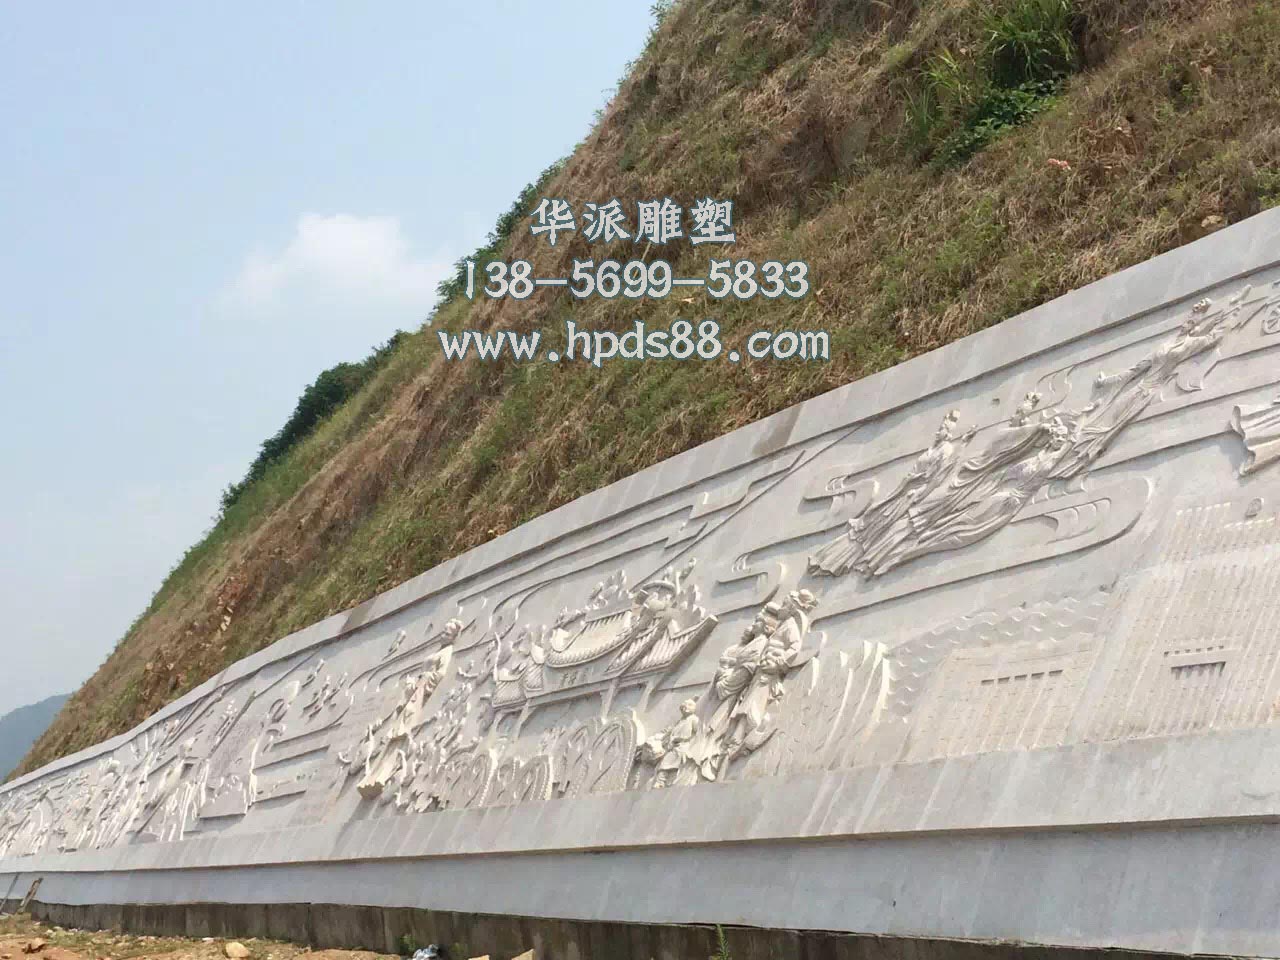 合肥华派雕塑制作安庆大型浮雕墙